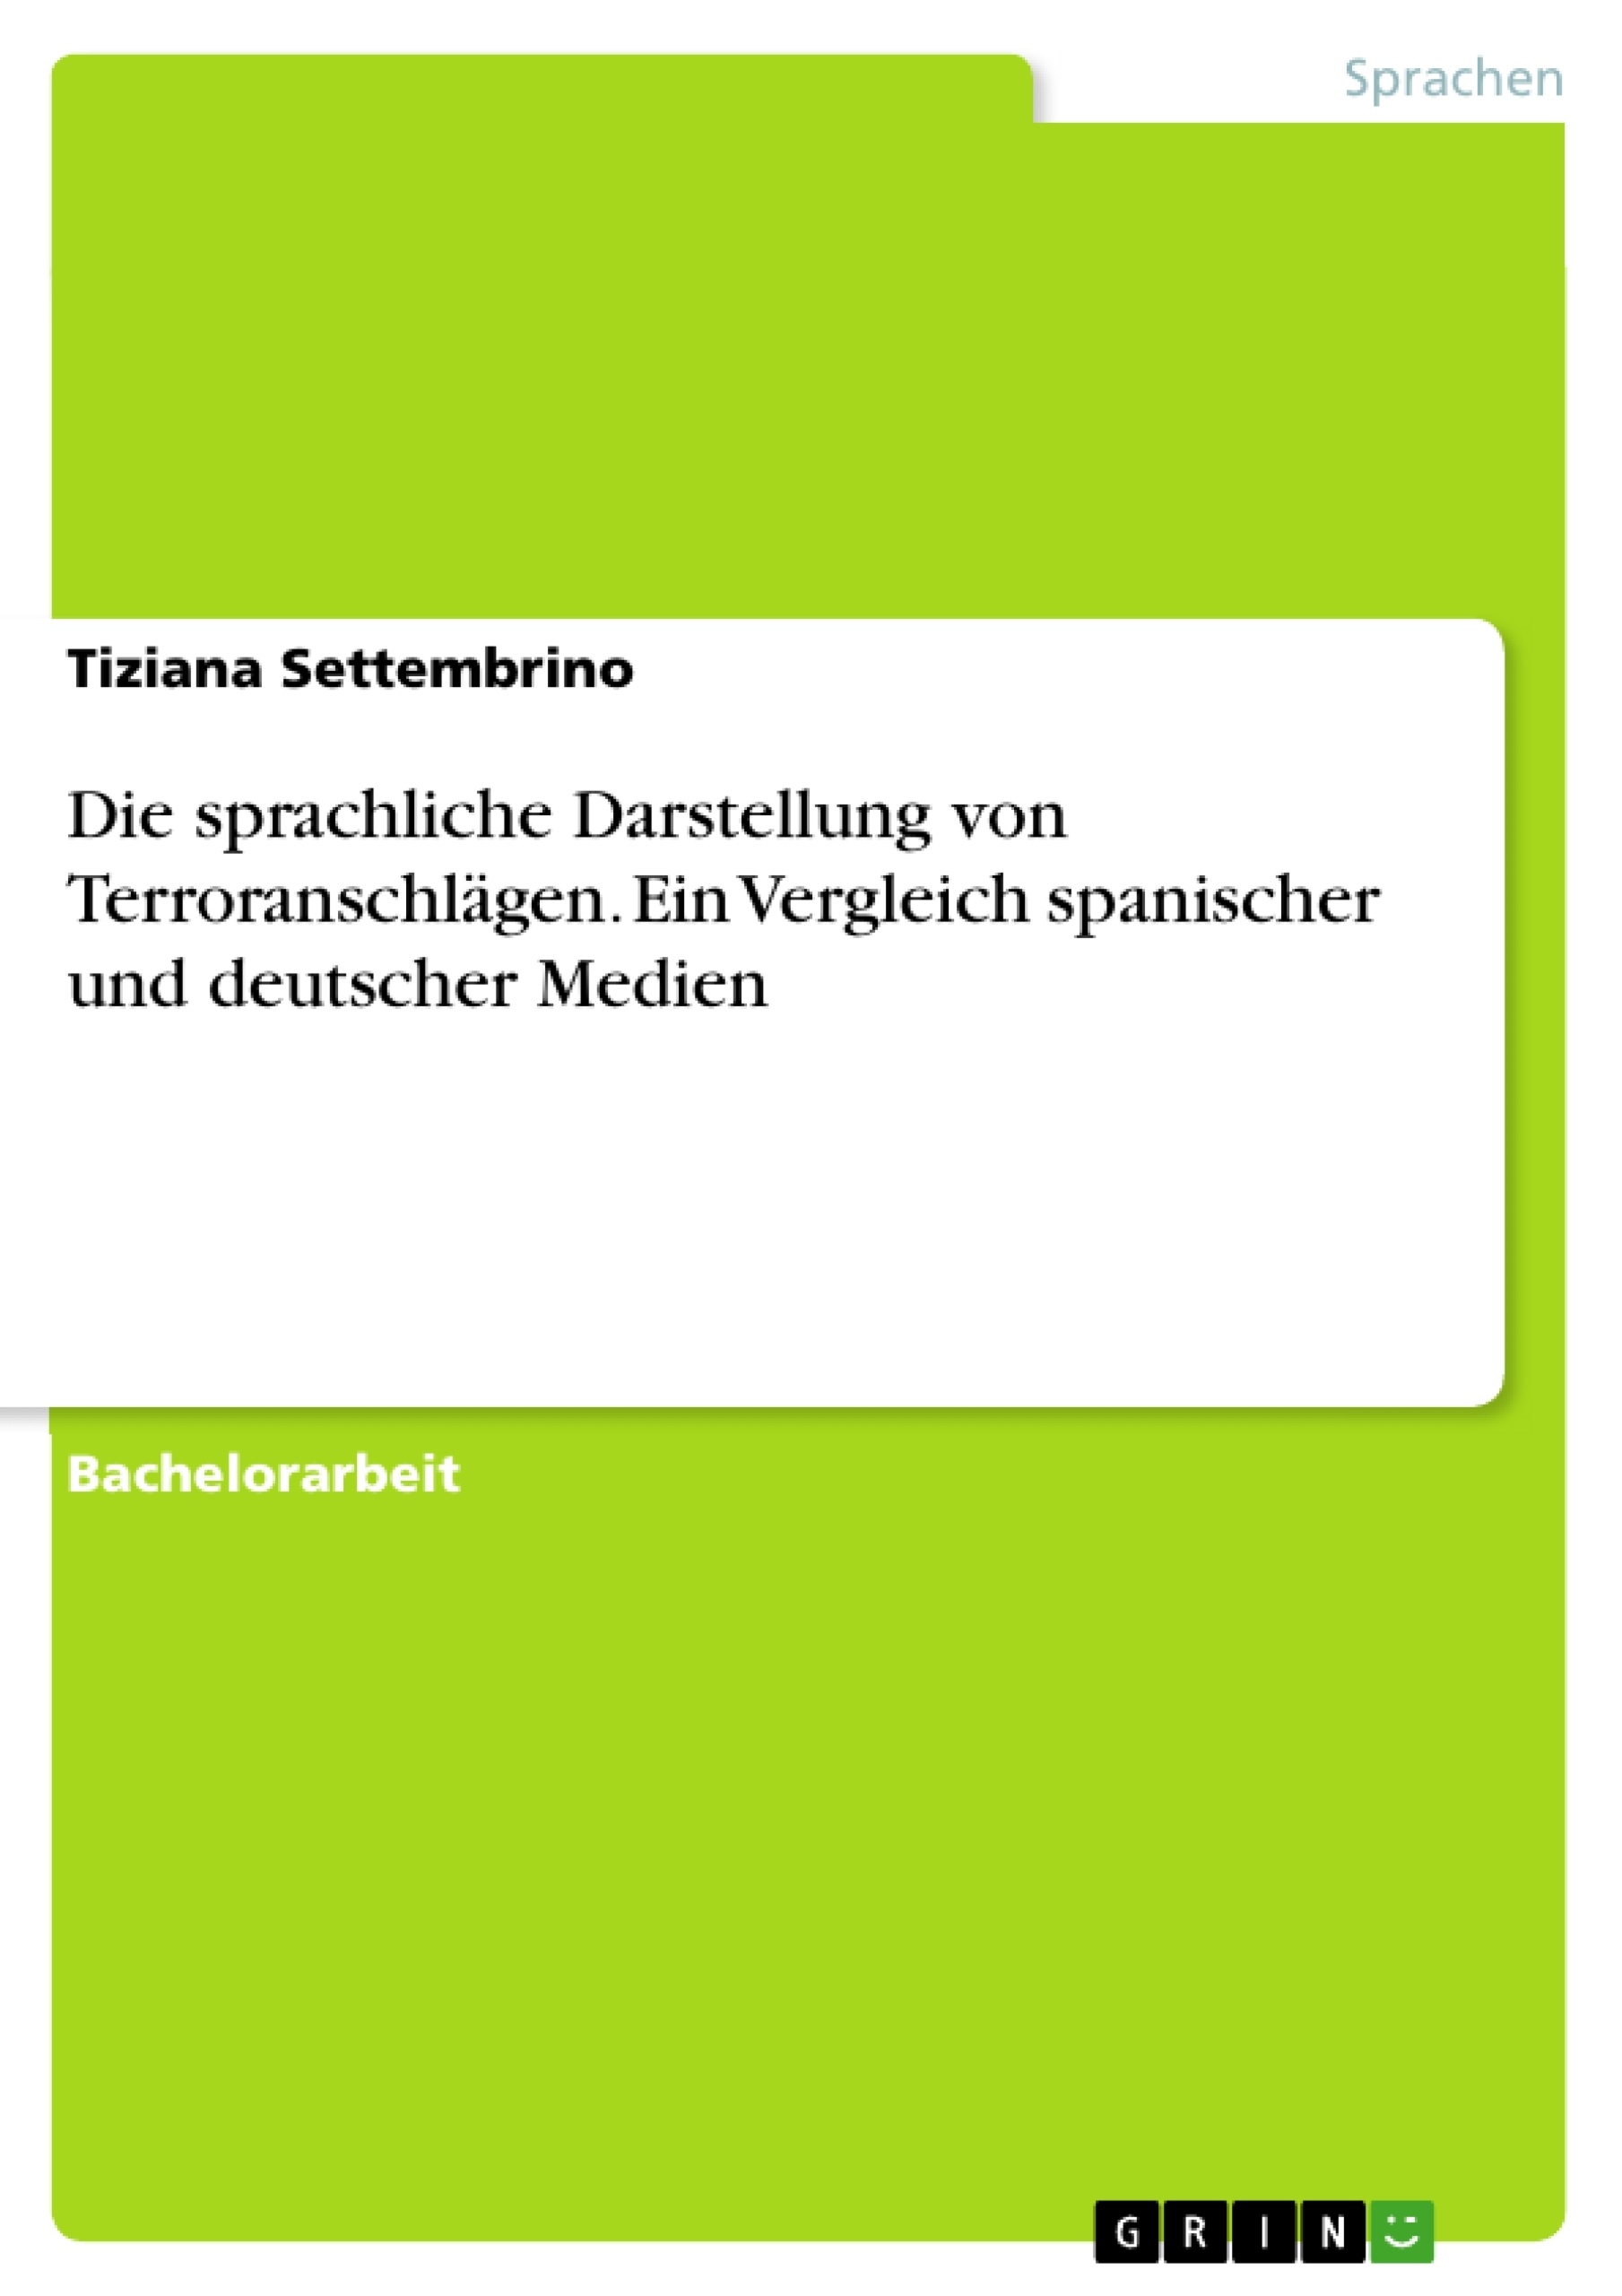 Title: Die sprachliche Darstellung von Terroranschlägen. Ein Vergleich spanischer und deutscher Medien